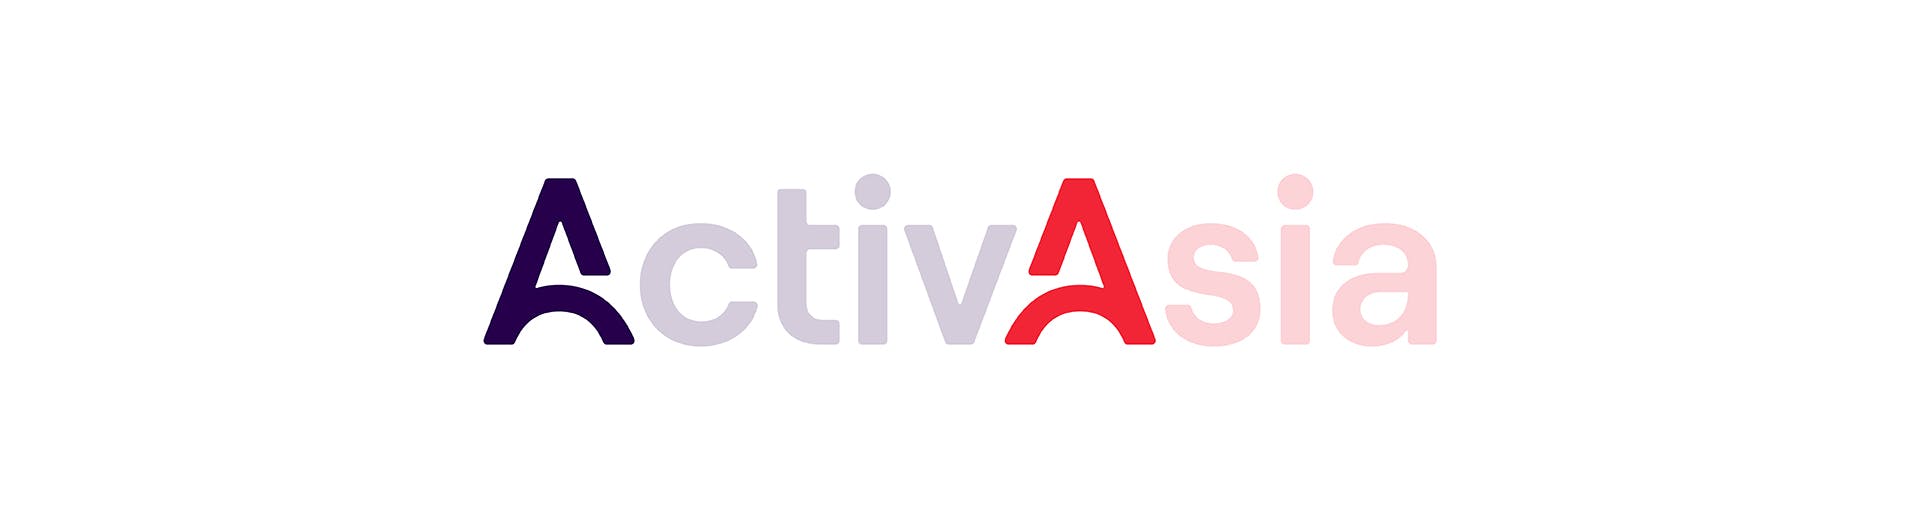 ActivAsia - Coda Builder_Icon Highlight.jpg